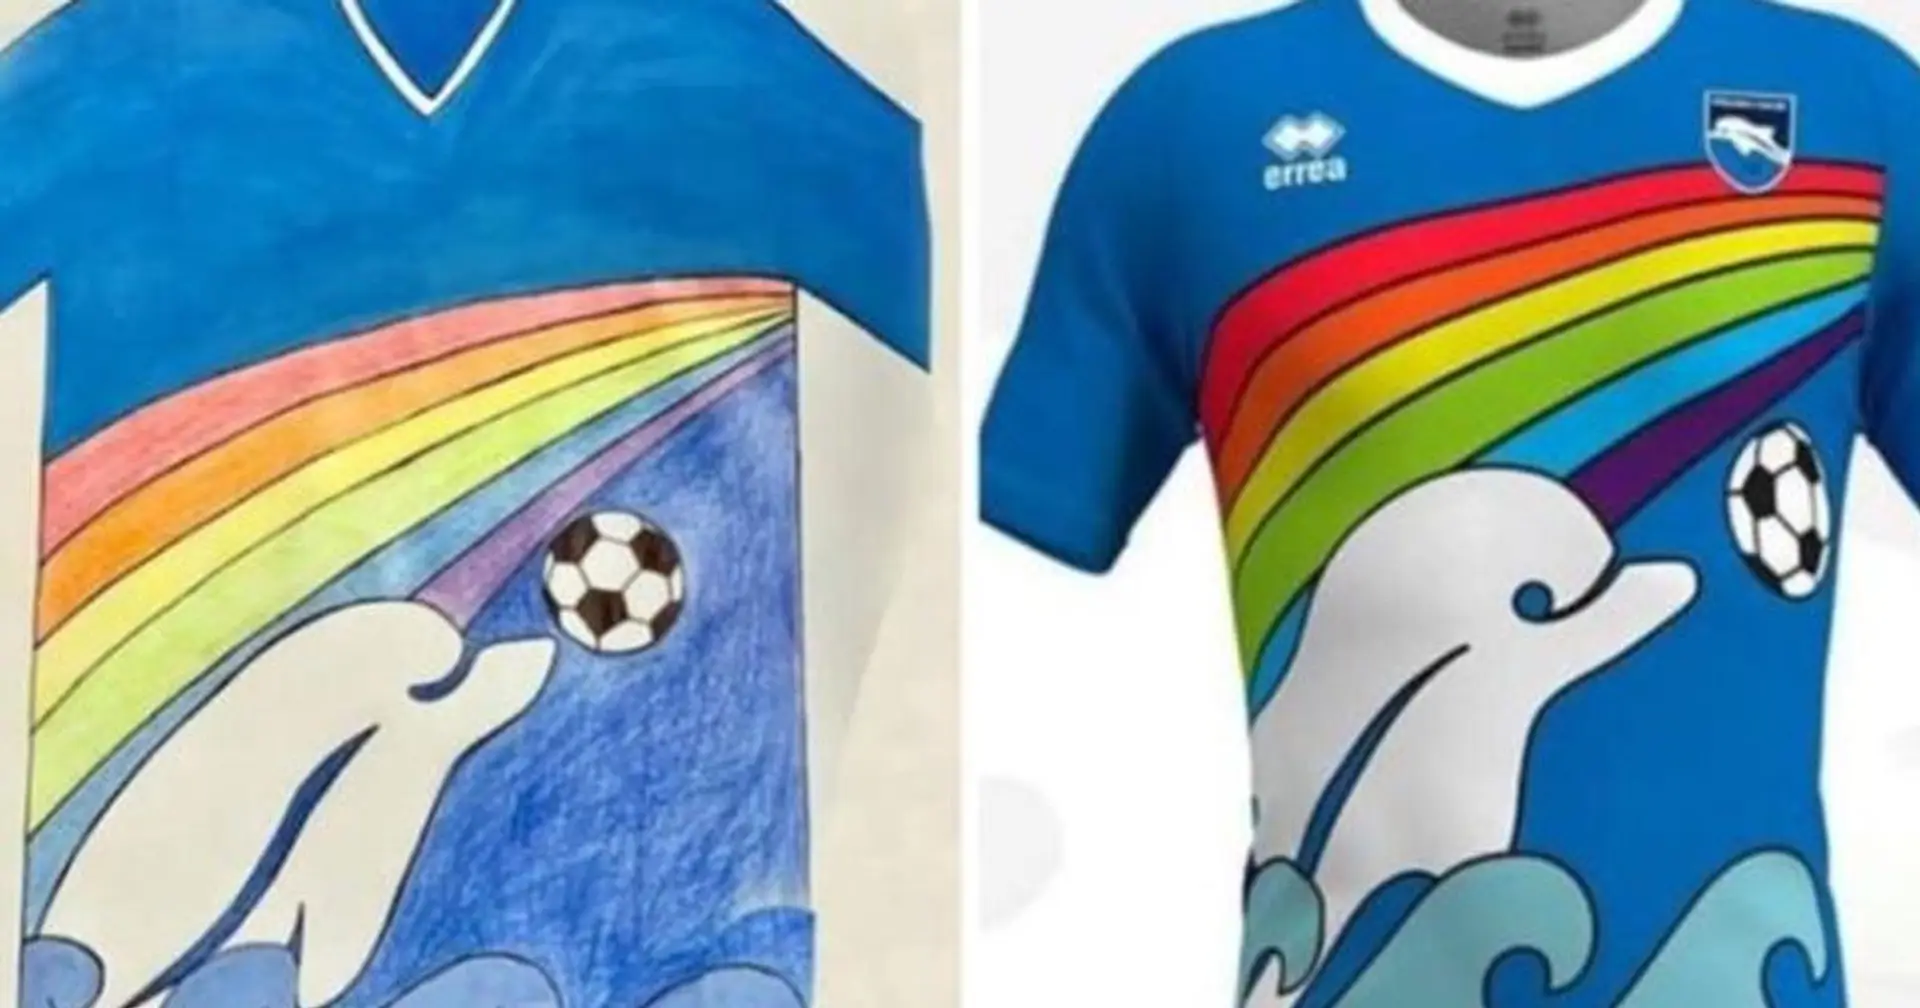 Pescara, club de la Serie B, adopte la conception d'un maillot d'un fan de 6 ans pour la saison prochaine après avoir gagné le concours portant la devise "donnez un coup de pied au COVID-19"